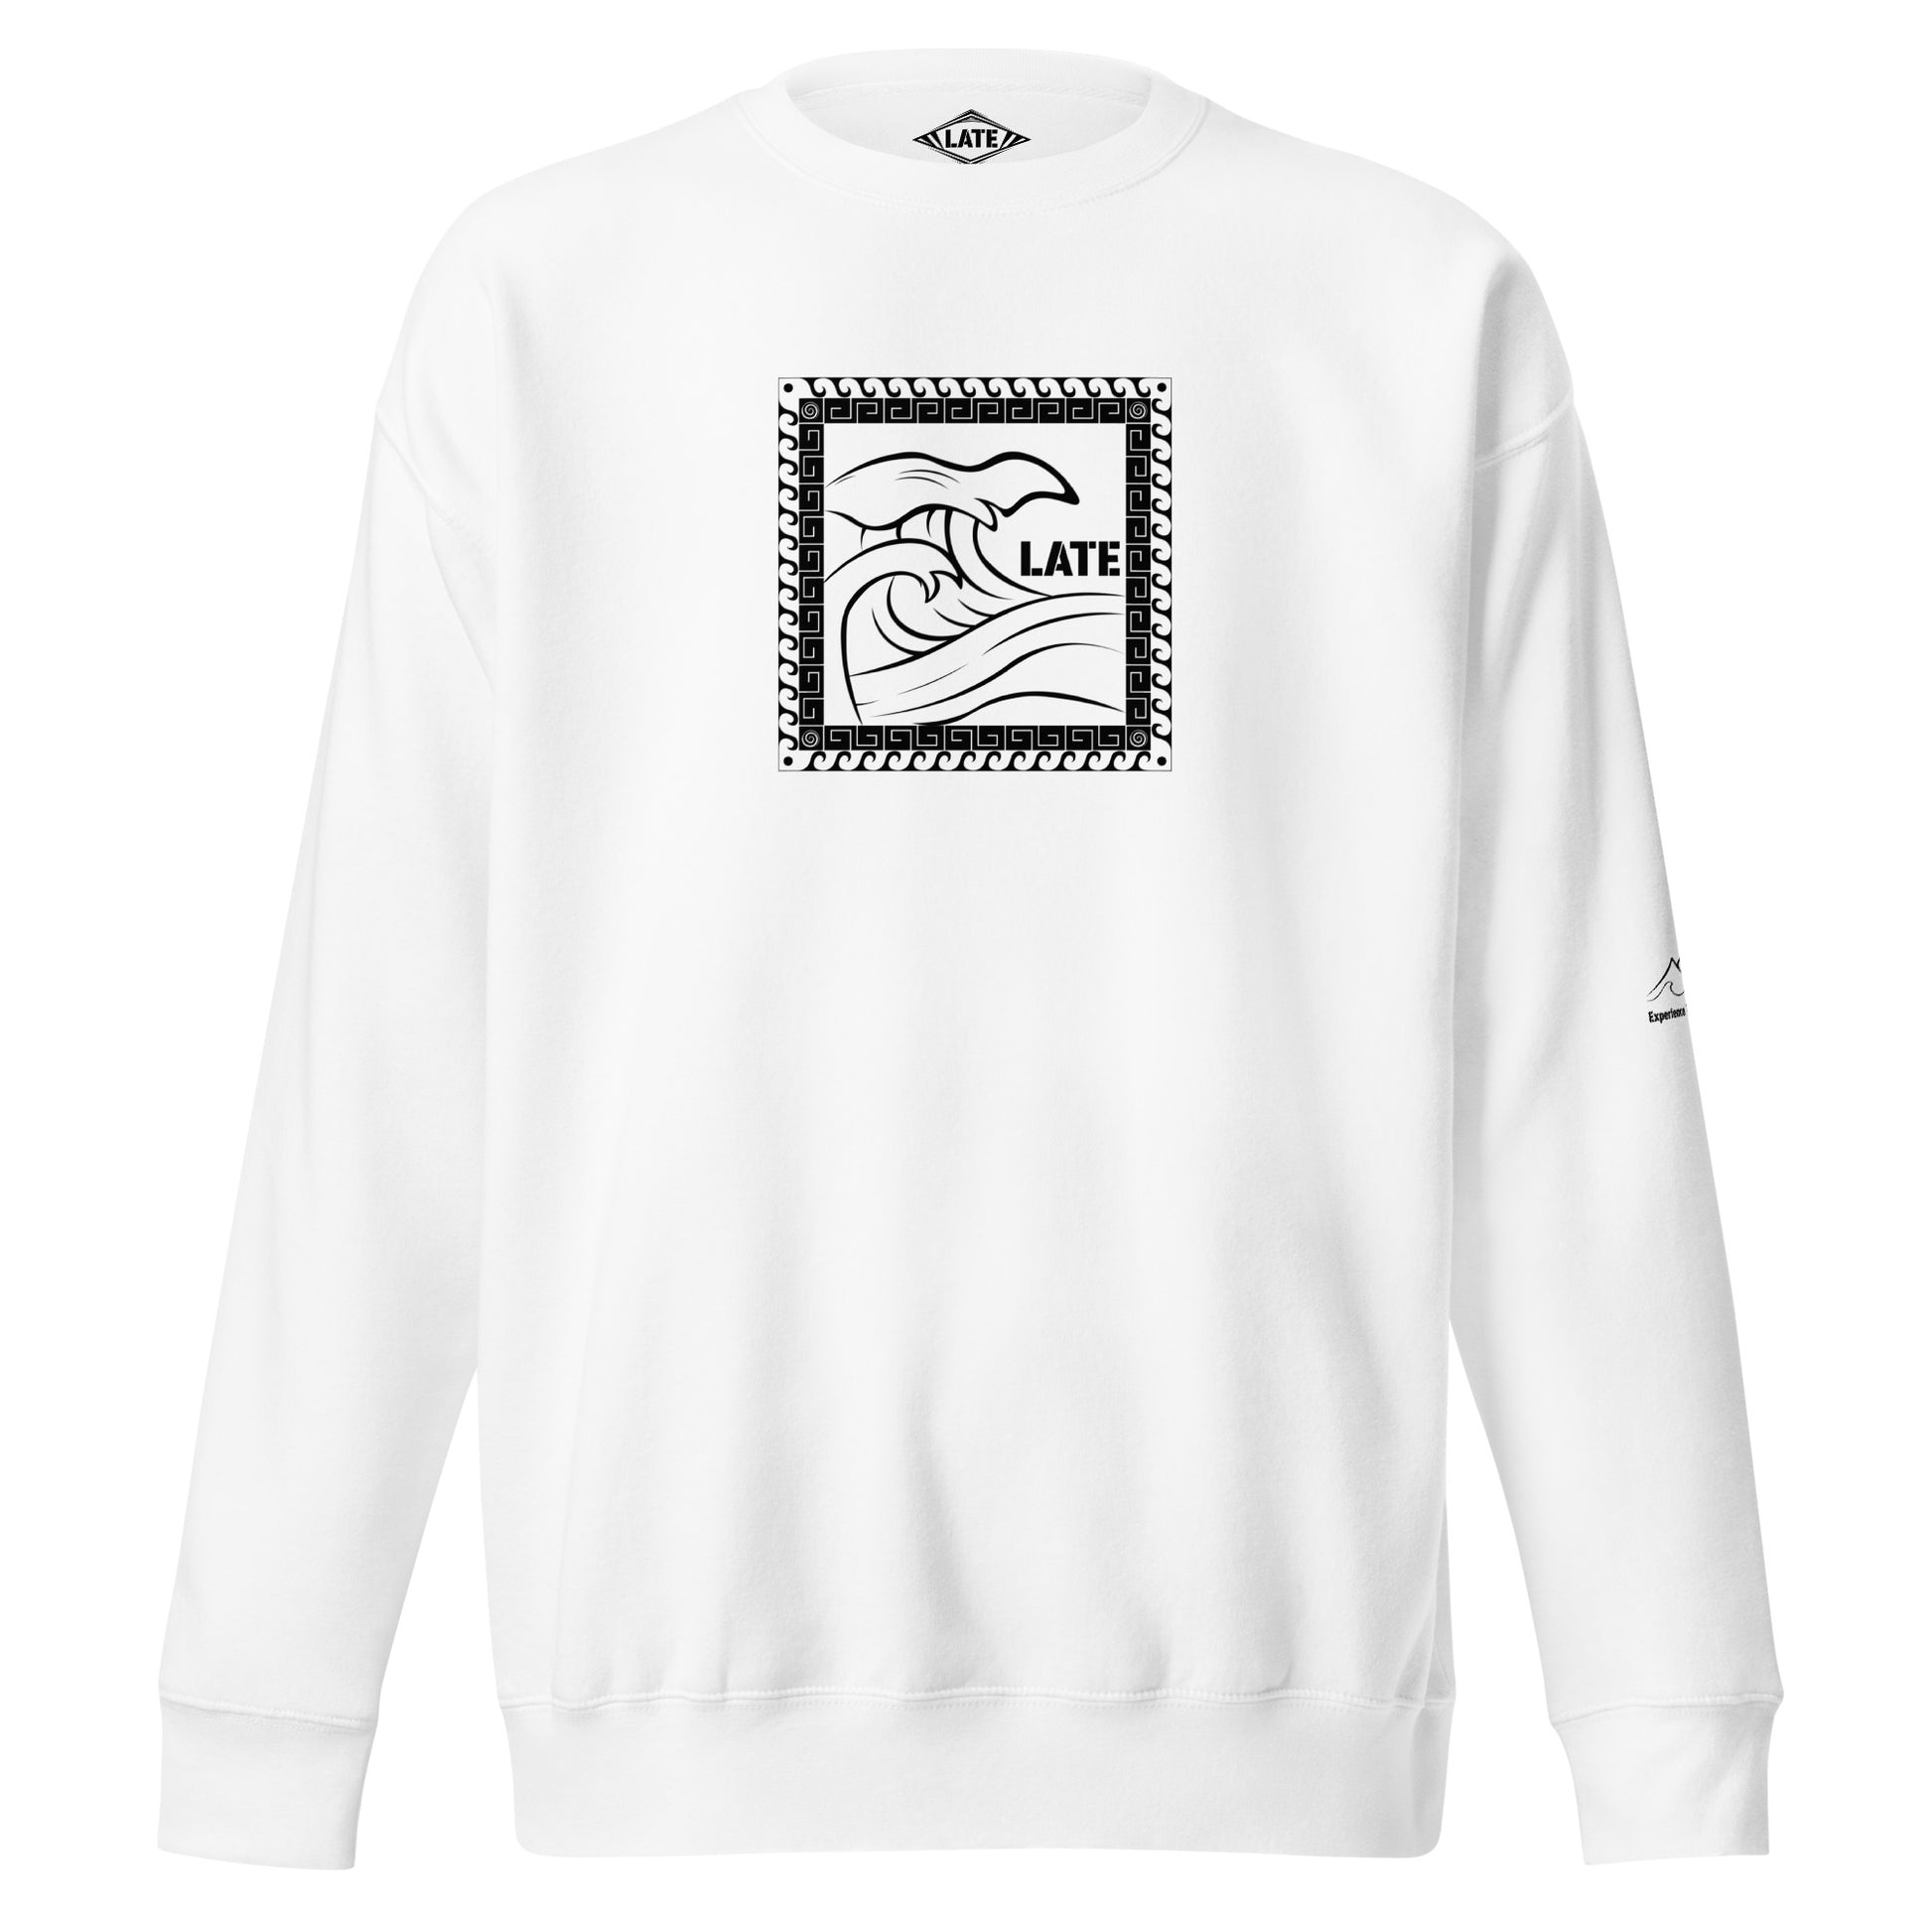 Sweatshirt surf Tricky Wave maori vague japonaise, sweat unisex couleur blanc 